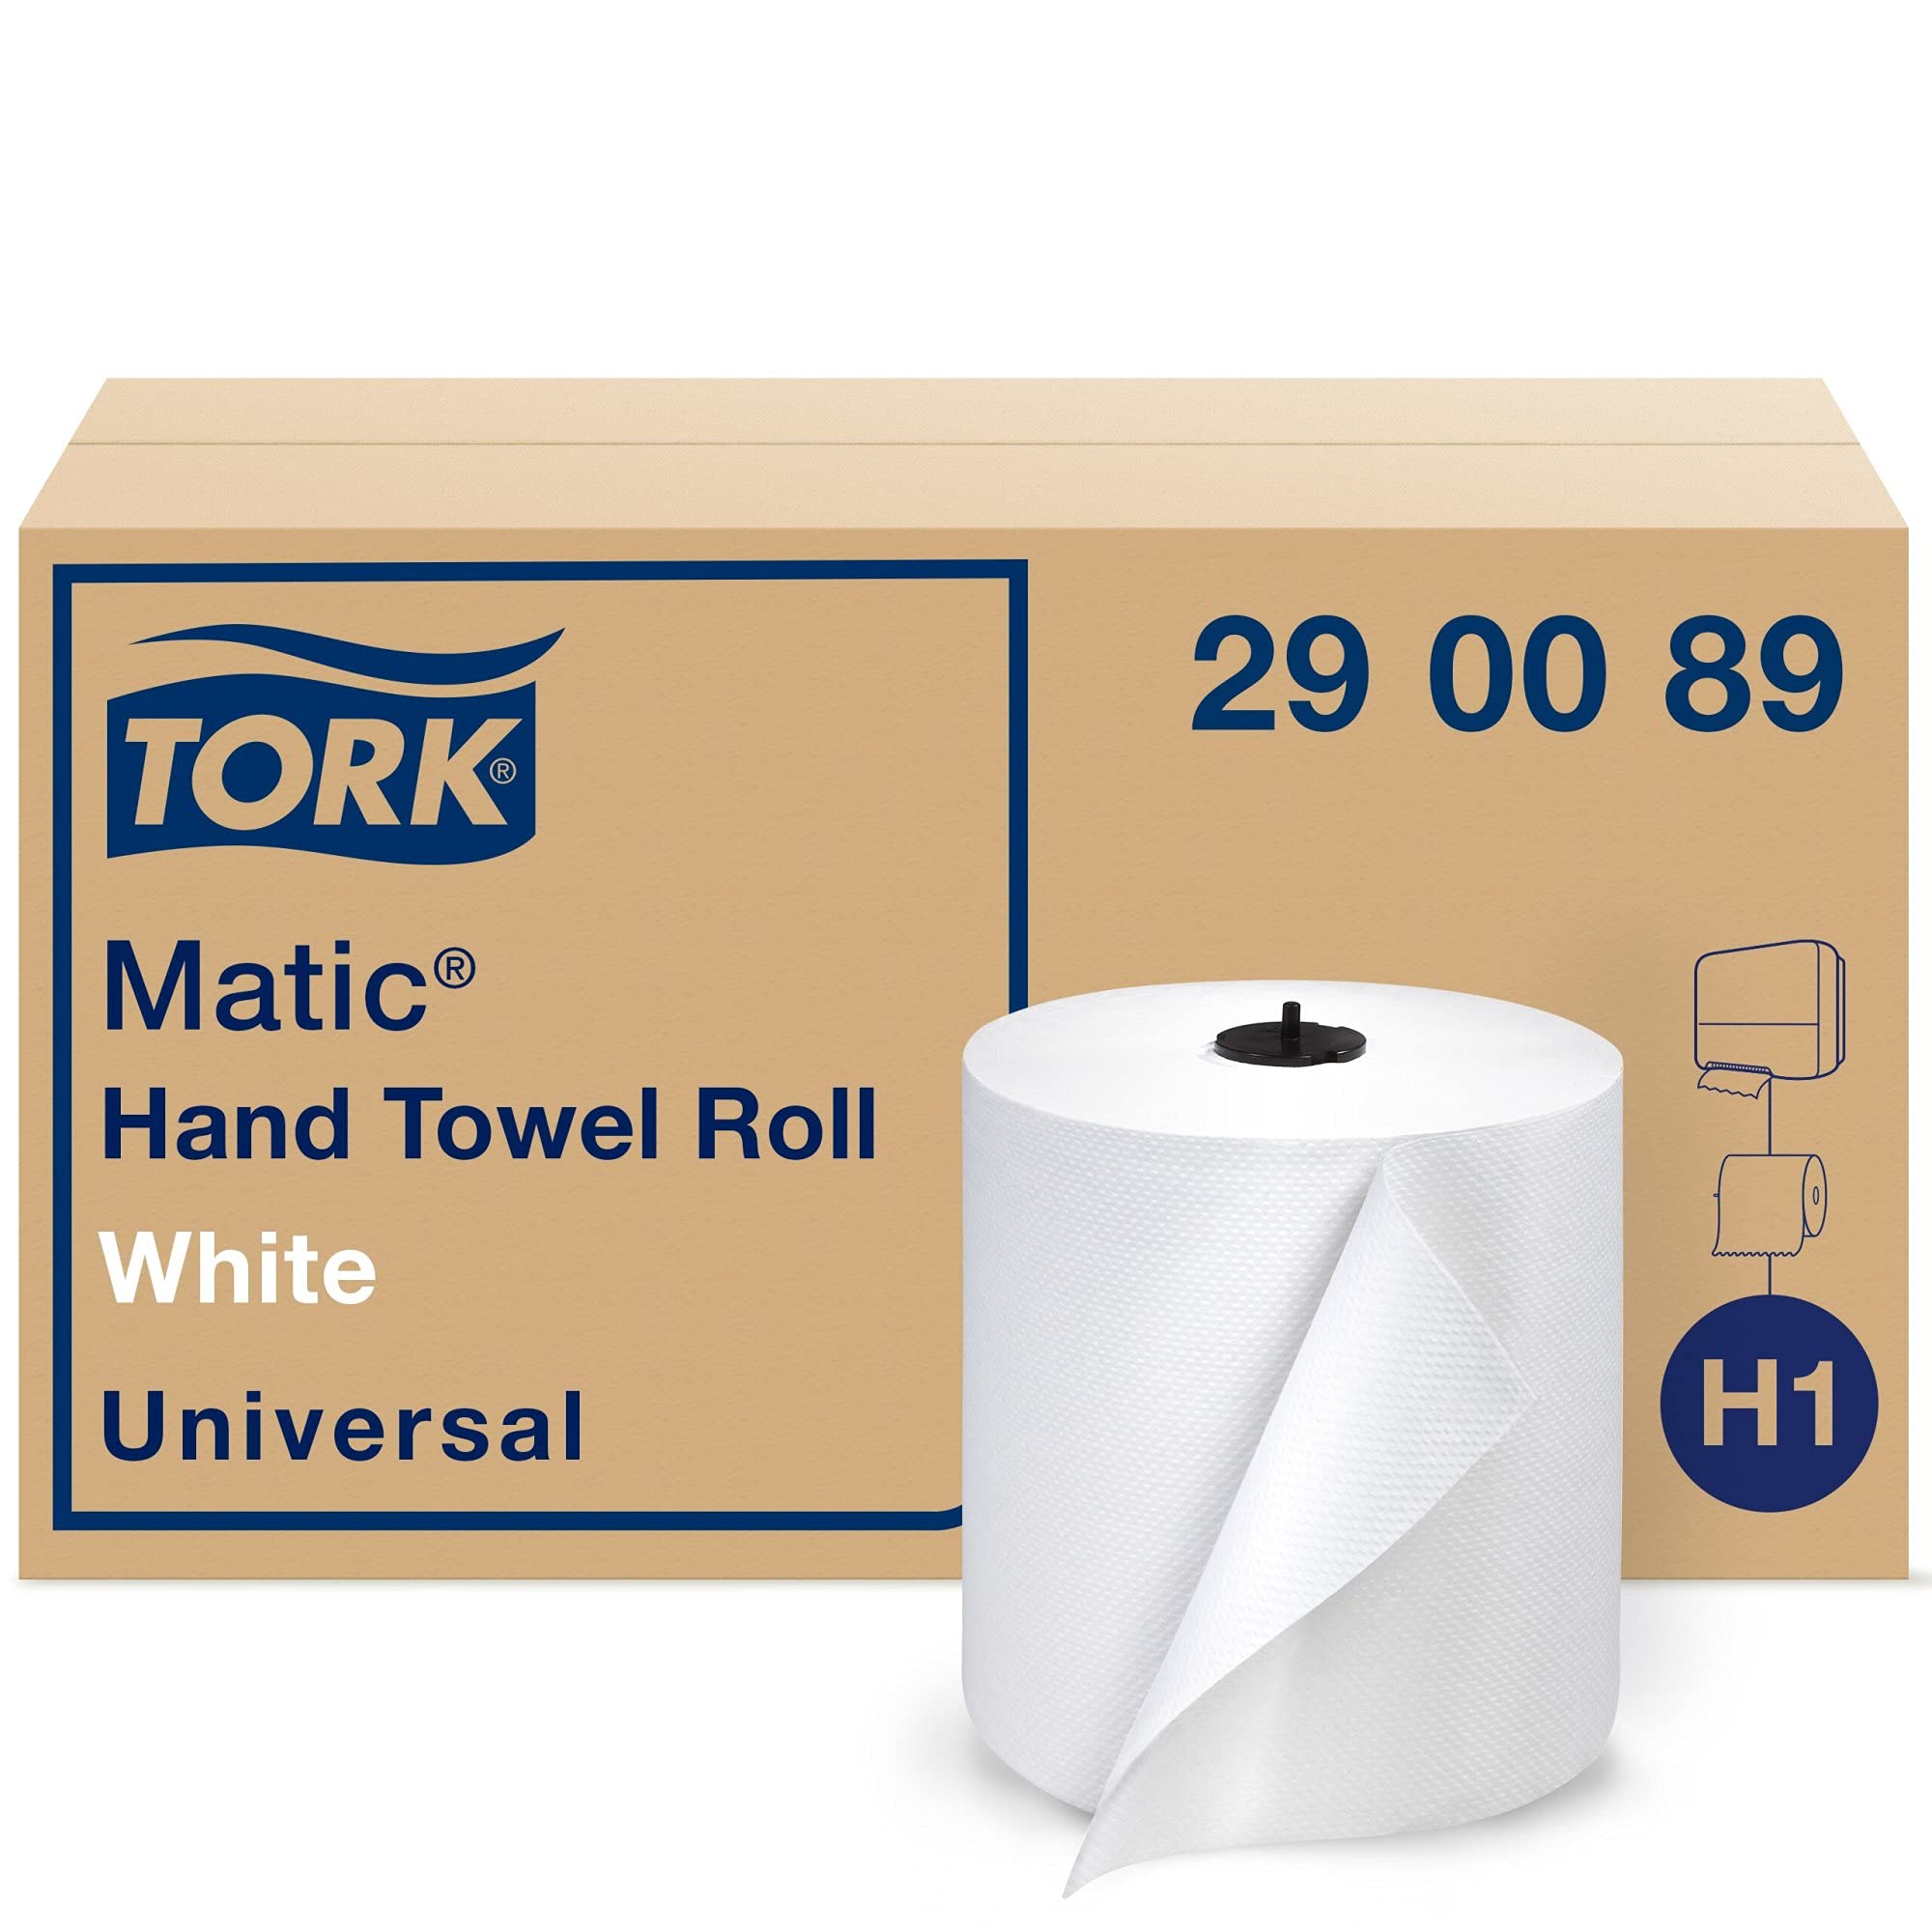 Tork Matic 纸巾卷白色 H1，通用，100% 再生纤维，6 卷 x 700 英尺，290089...